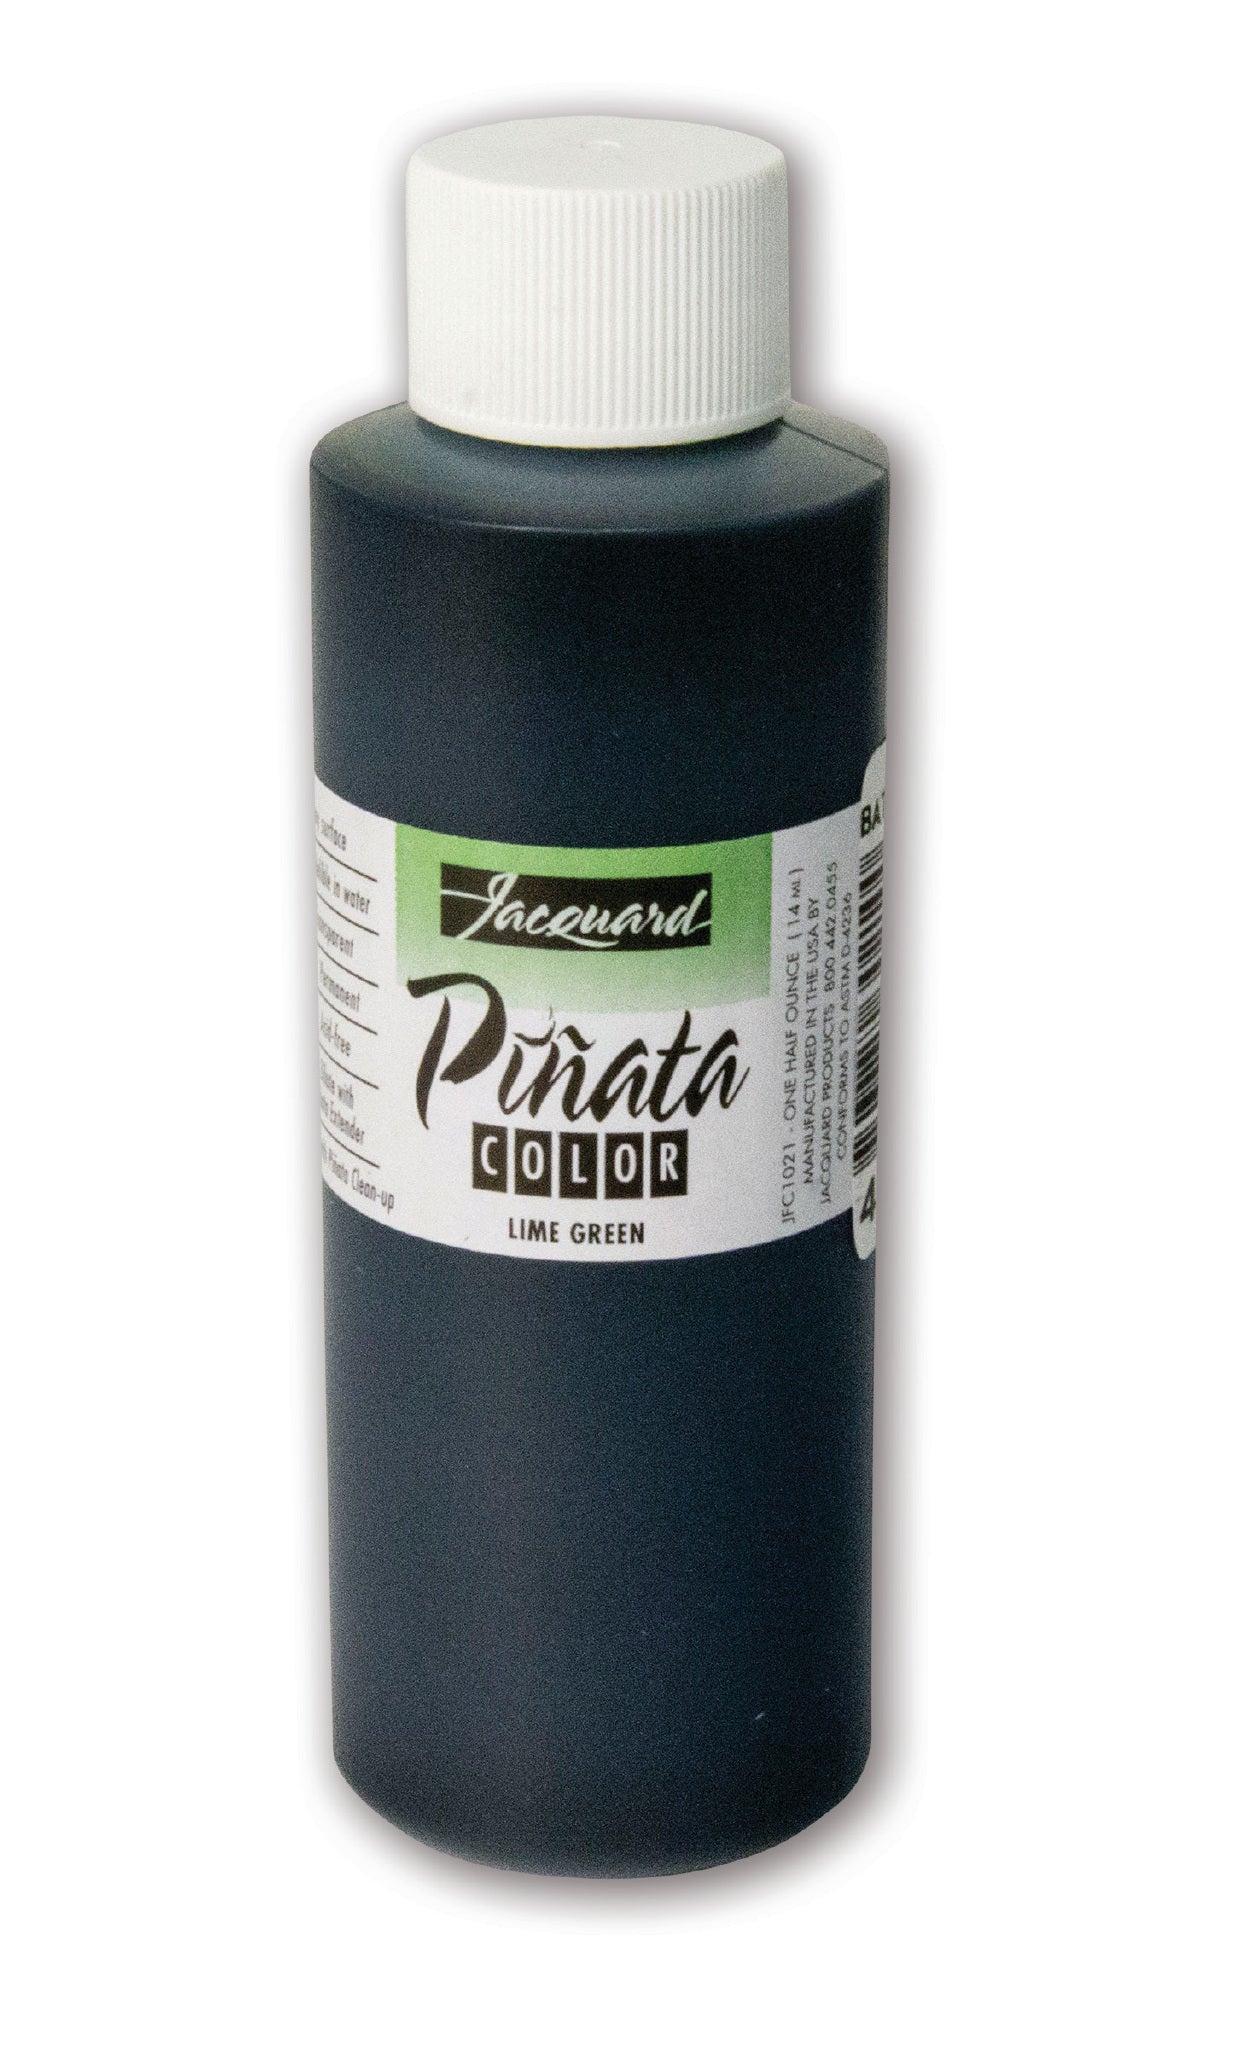 Jacquard Pinata Ink 120ml Lime Green - theartshop.com.au